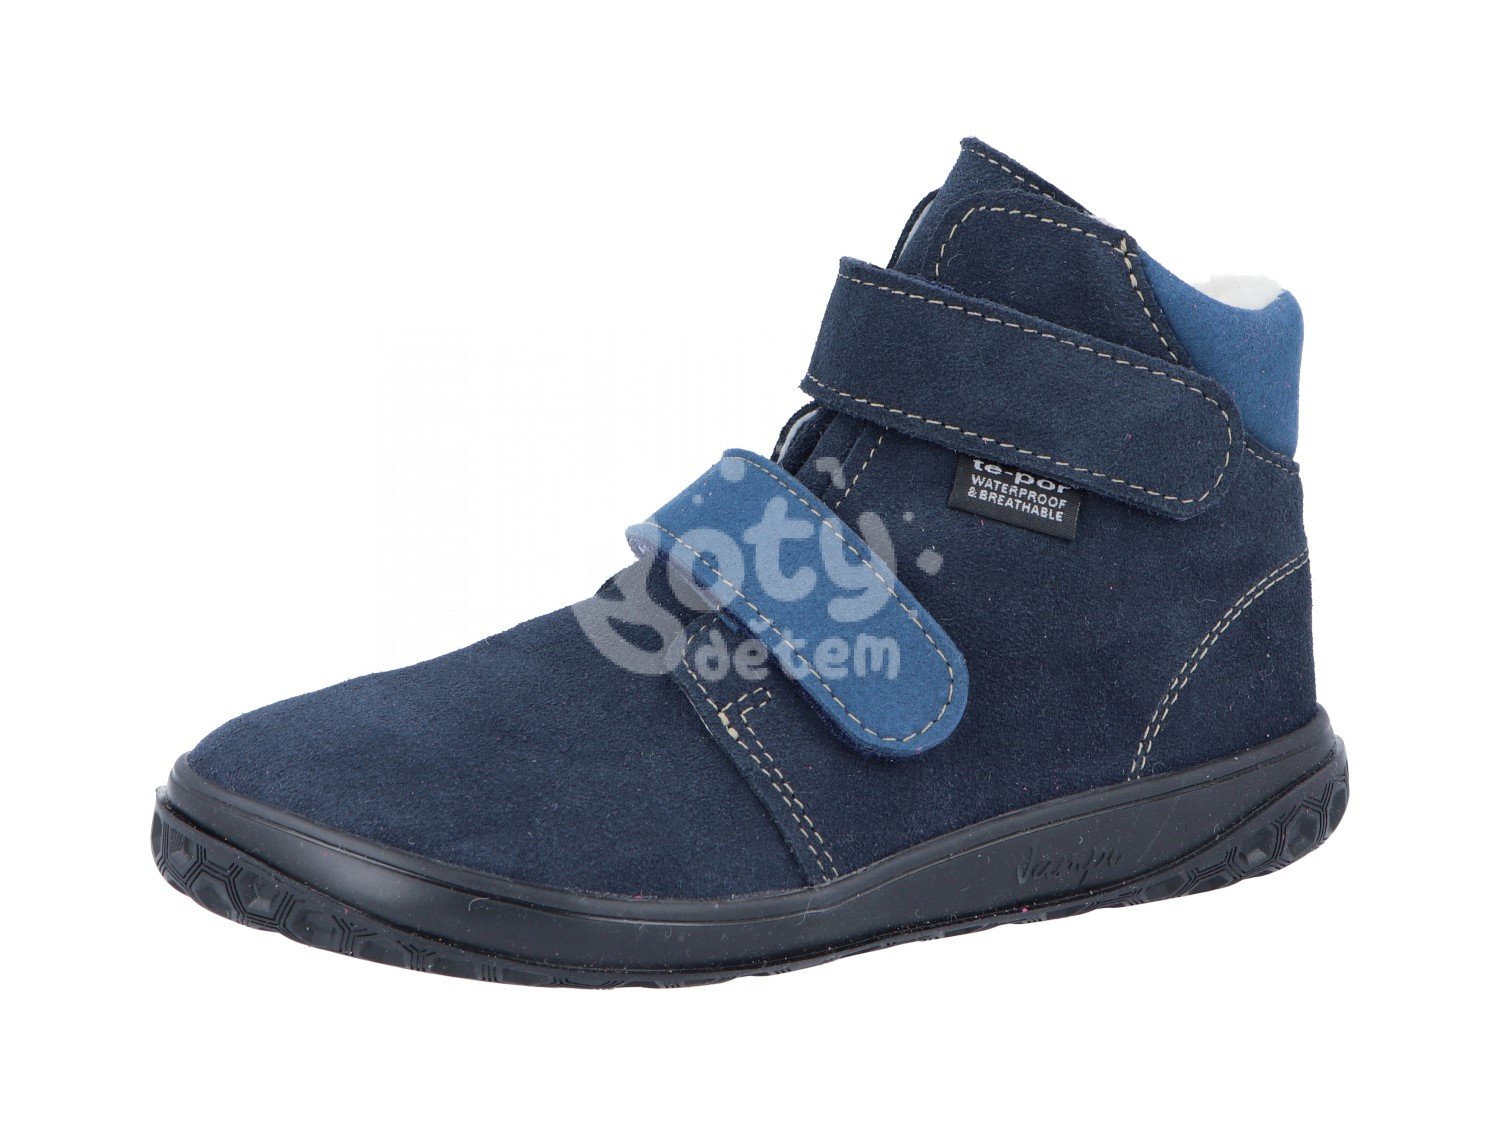 Jonap zimní kožené barefoot boty s membránou Bria modrá